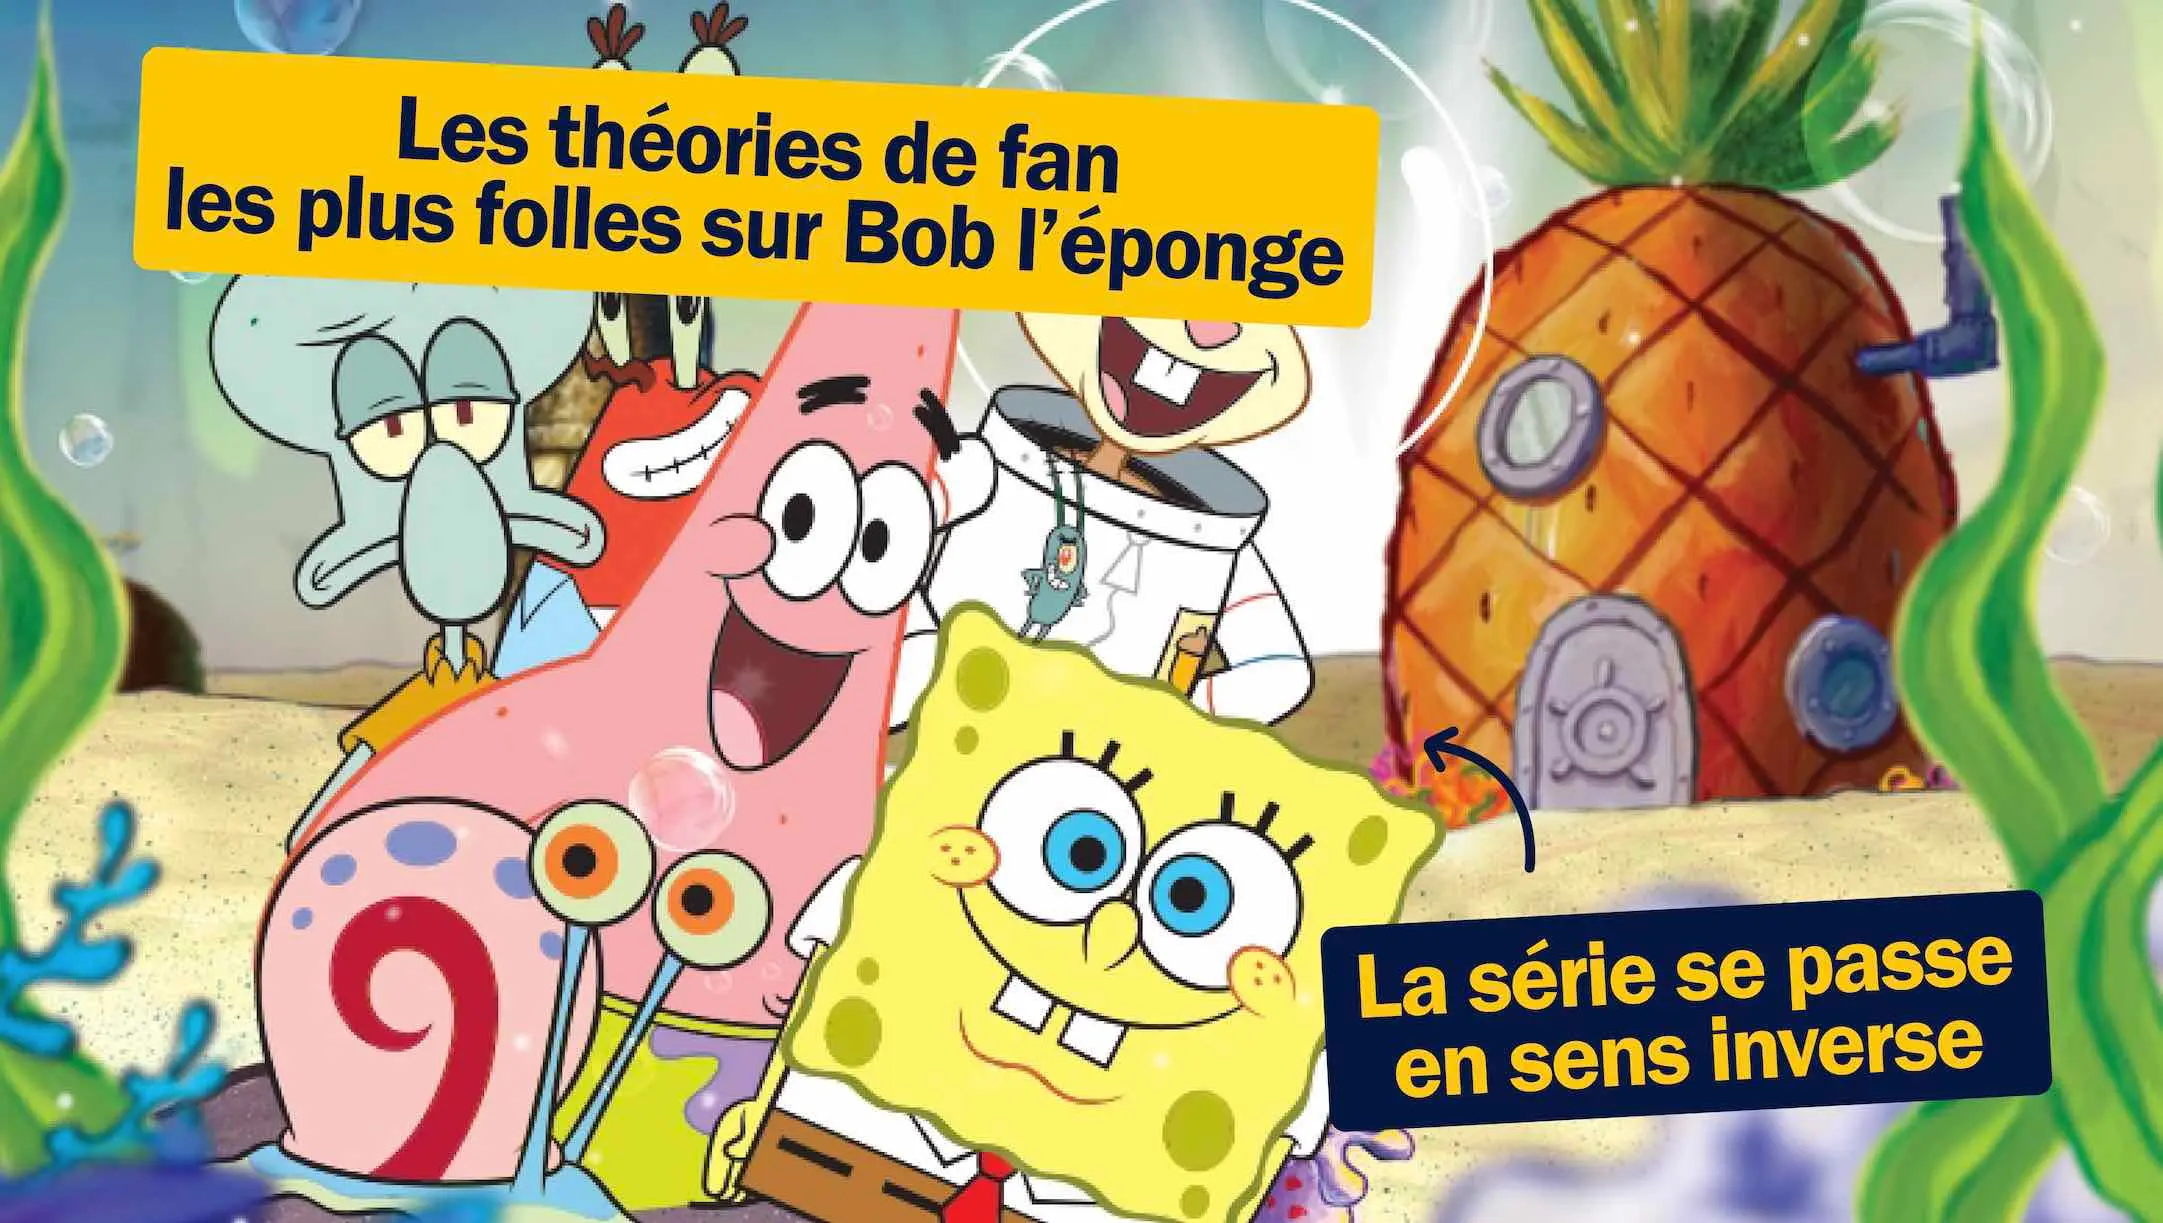 Toutes les théories de fans les plus folles sur Bob l’éponge